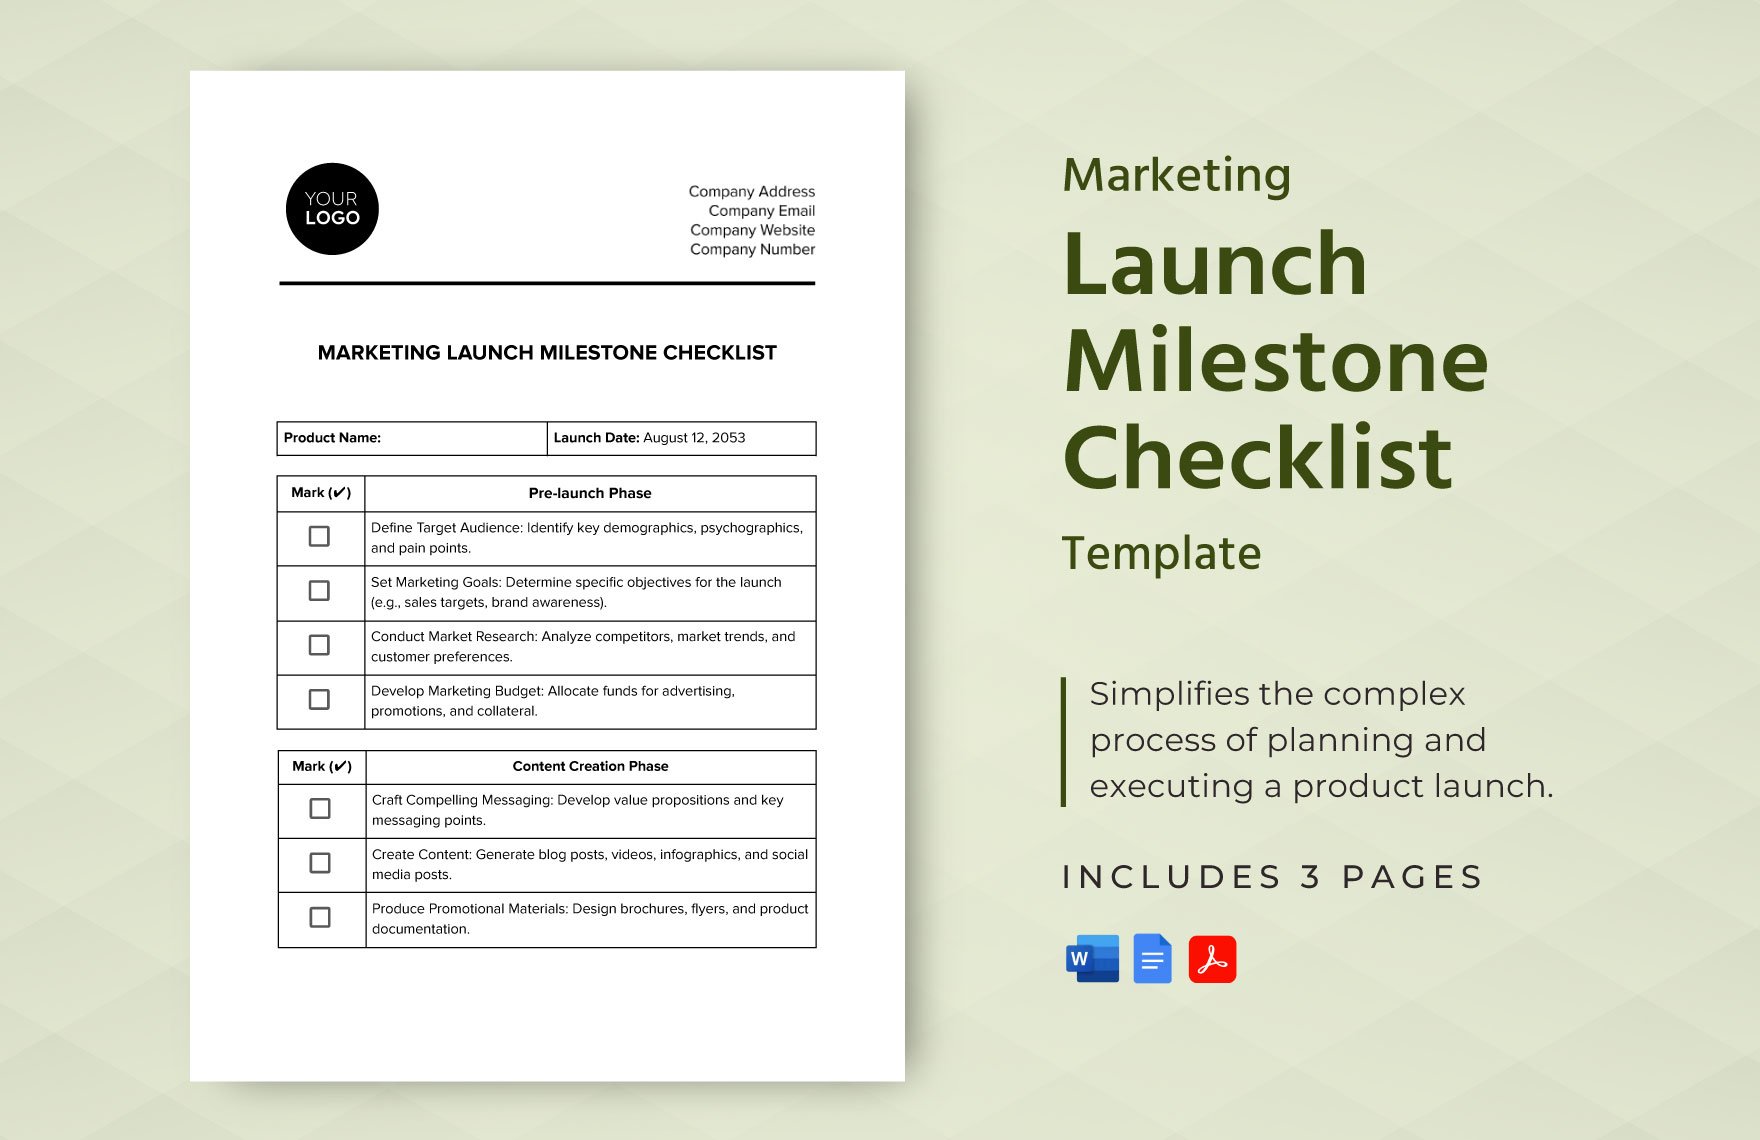 Marketing Launch Milestone Checklist Template